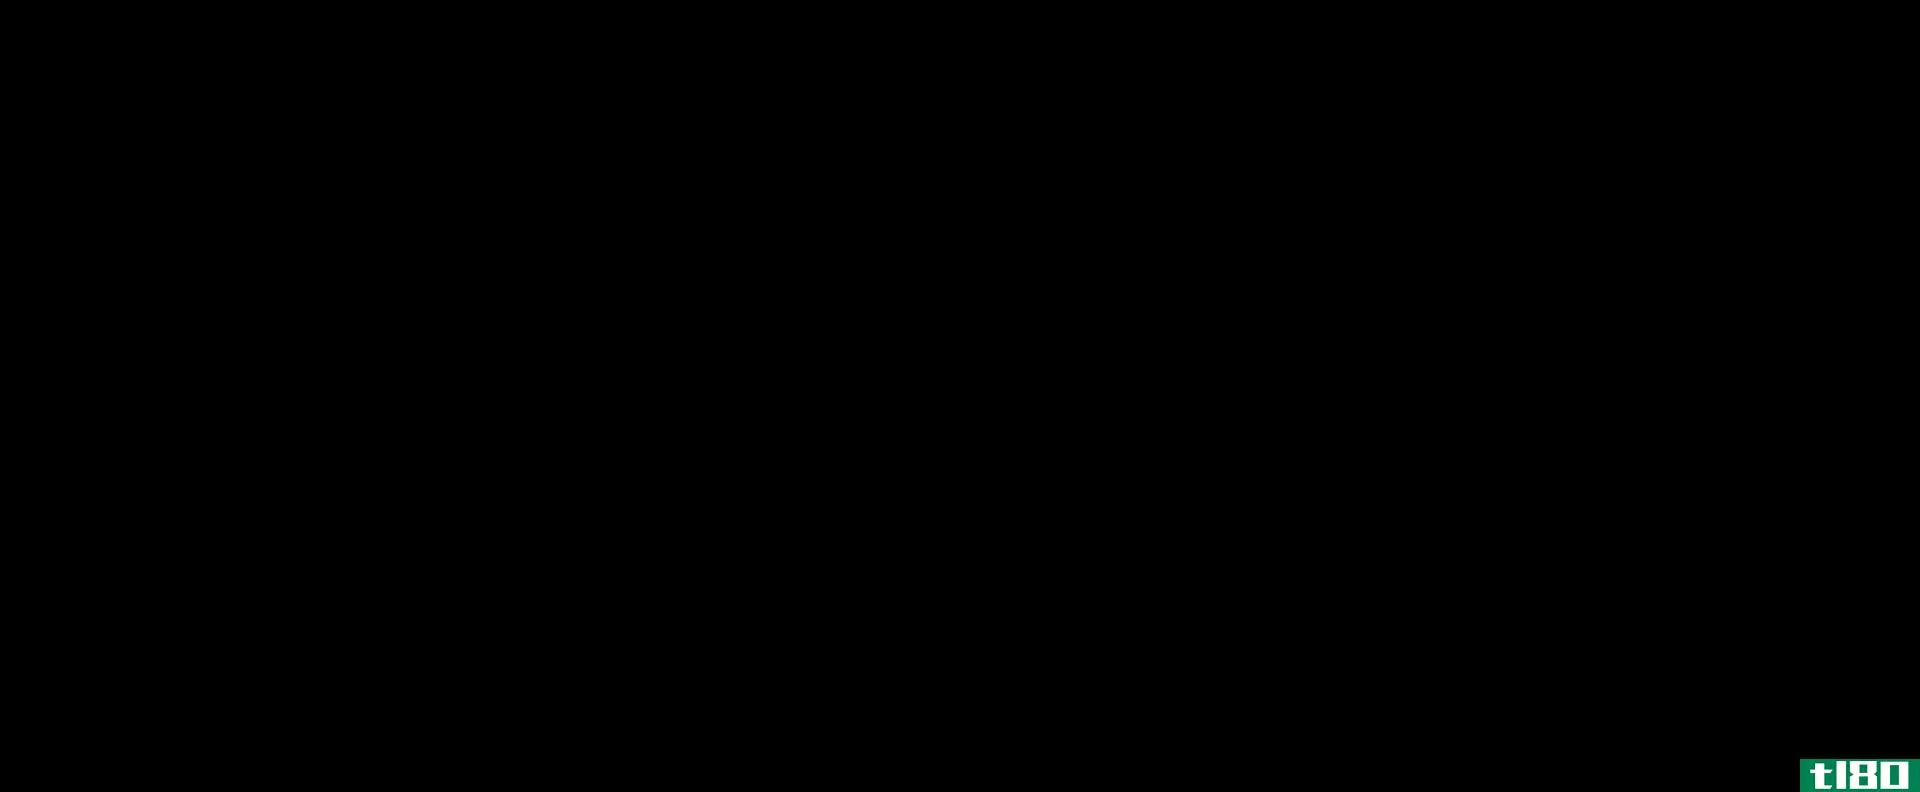 二甲苯(xylene)和丙酮(acetone)的区别